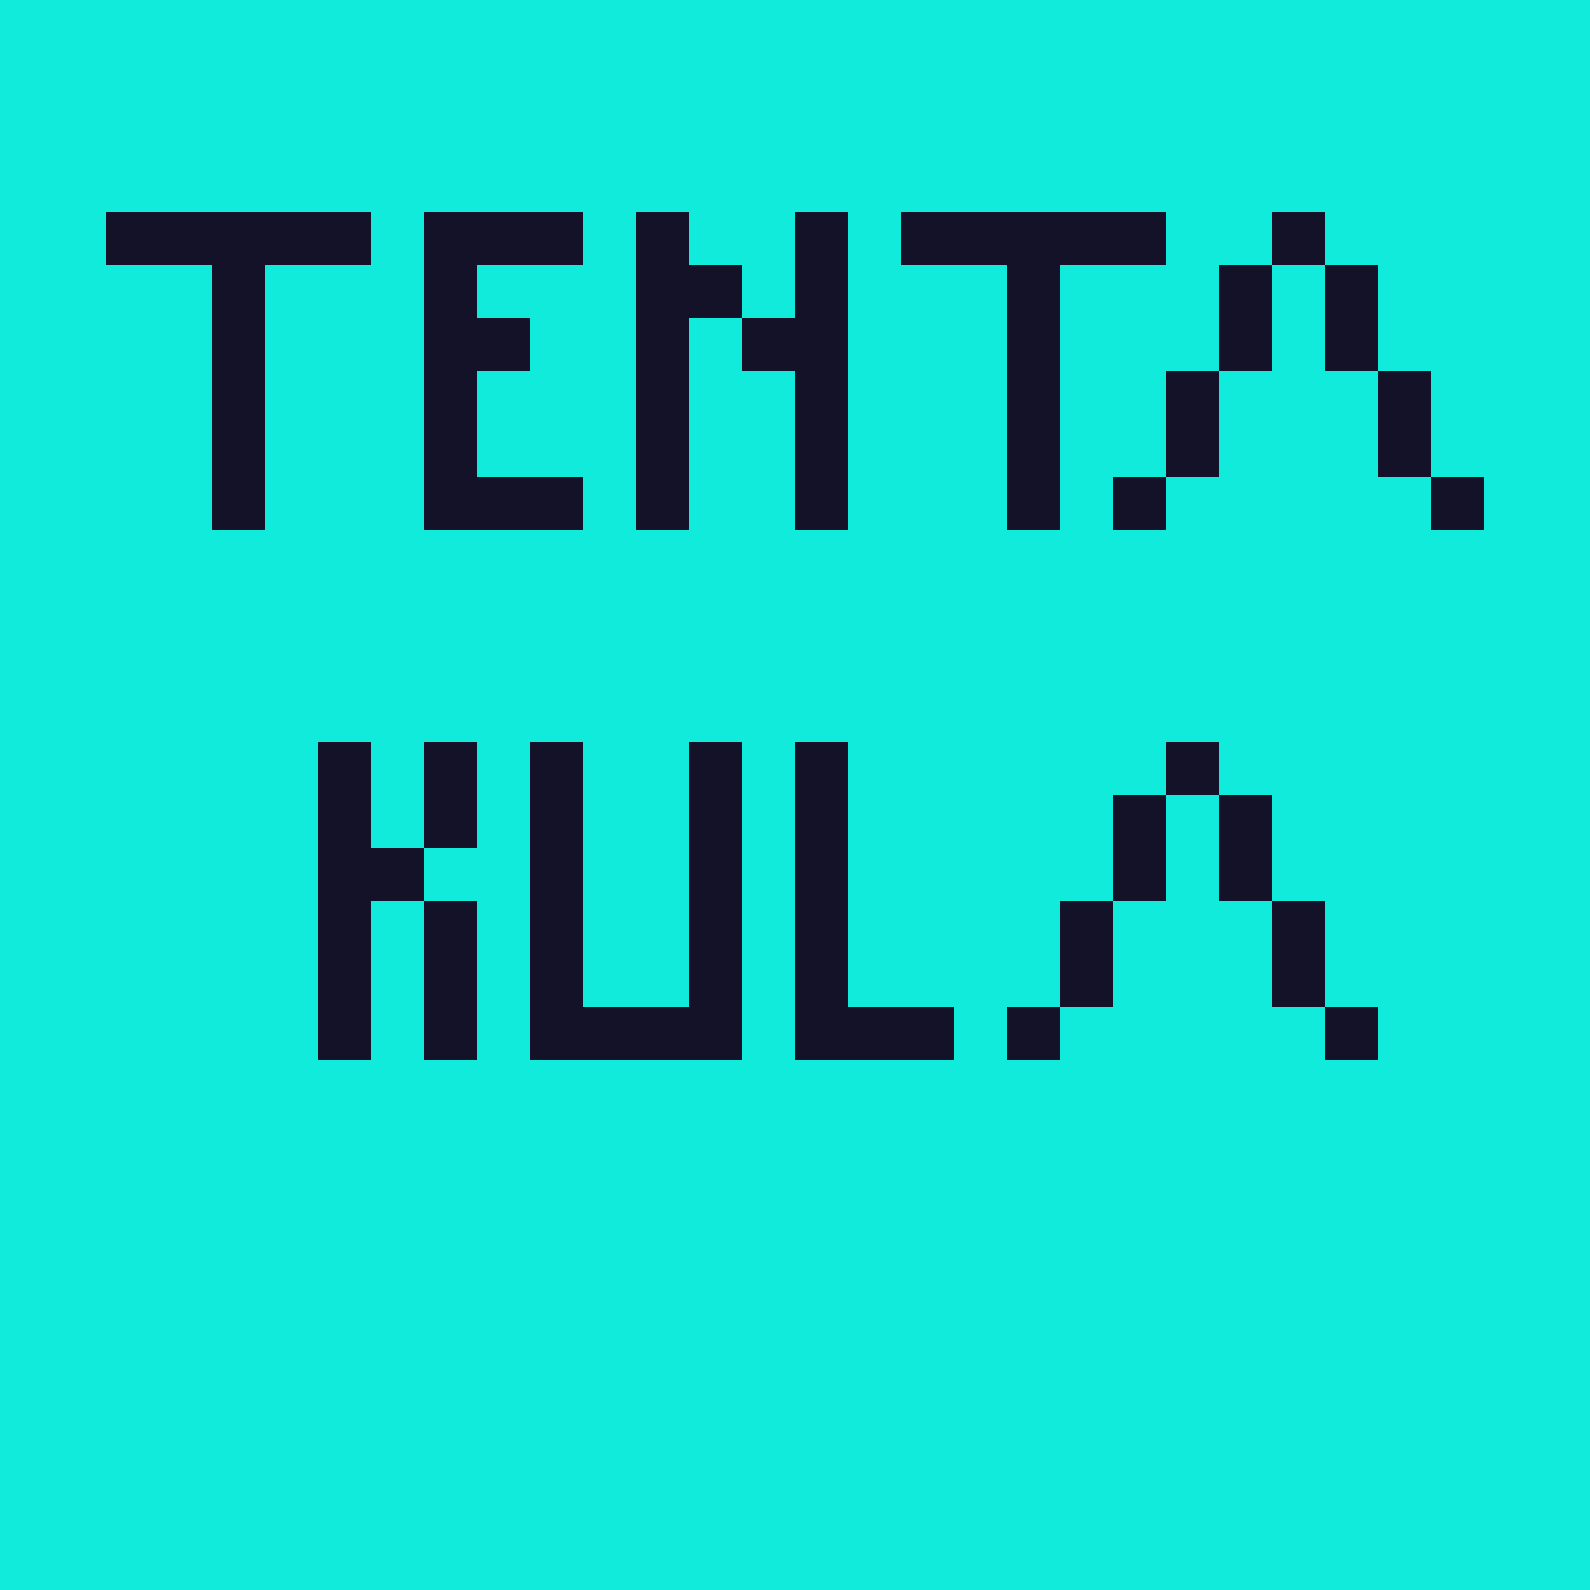 Das Bild zeigt einen Frame der Animation mit Hilfe von „Pixilart“, in dem mit einer Pixelschrift der Name „Tentakula“ zu lesen ist. Für den Kontrast wurde eine schwarze Schrift auf türkisem Hintergrund gewählt.